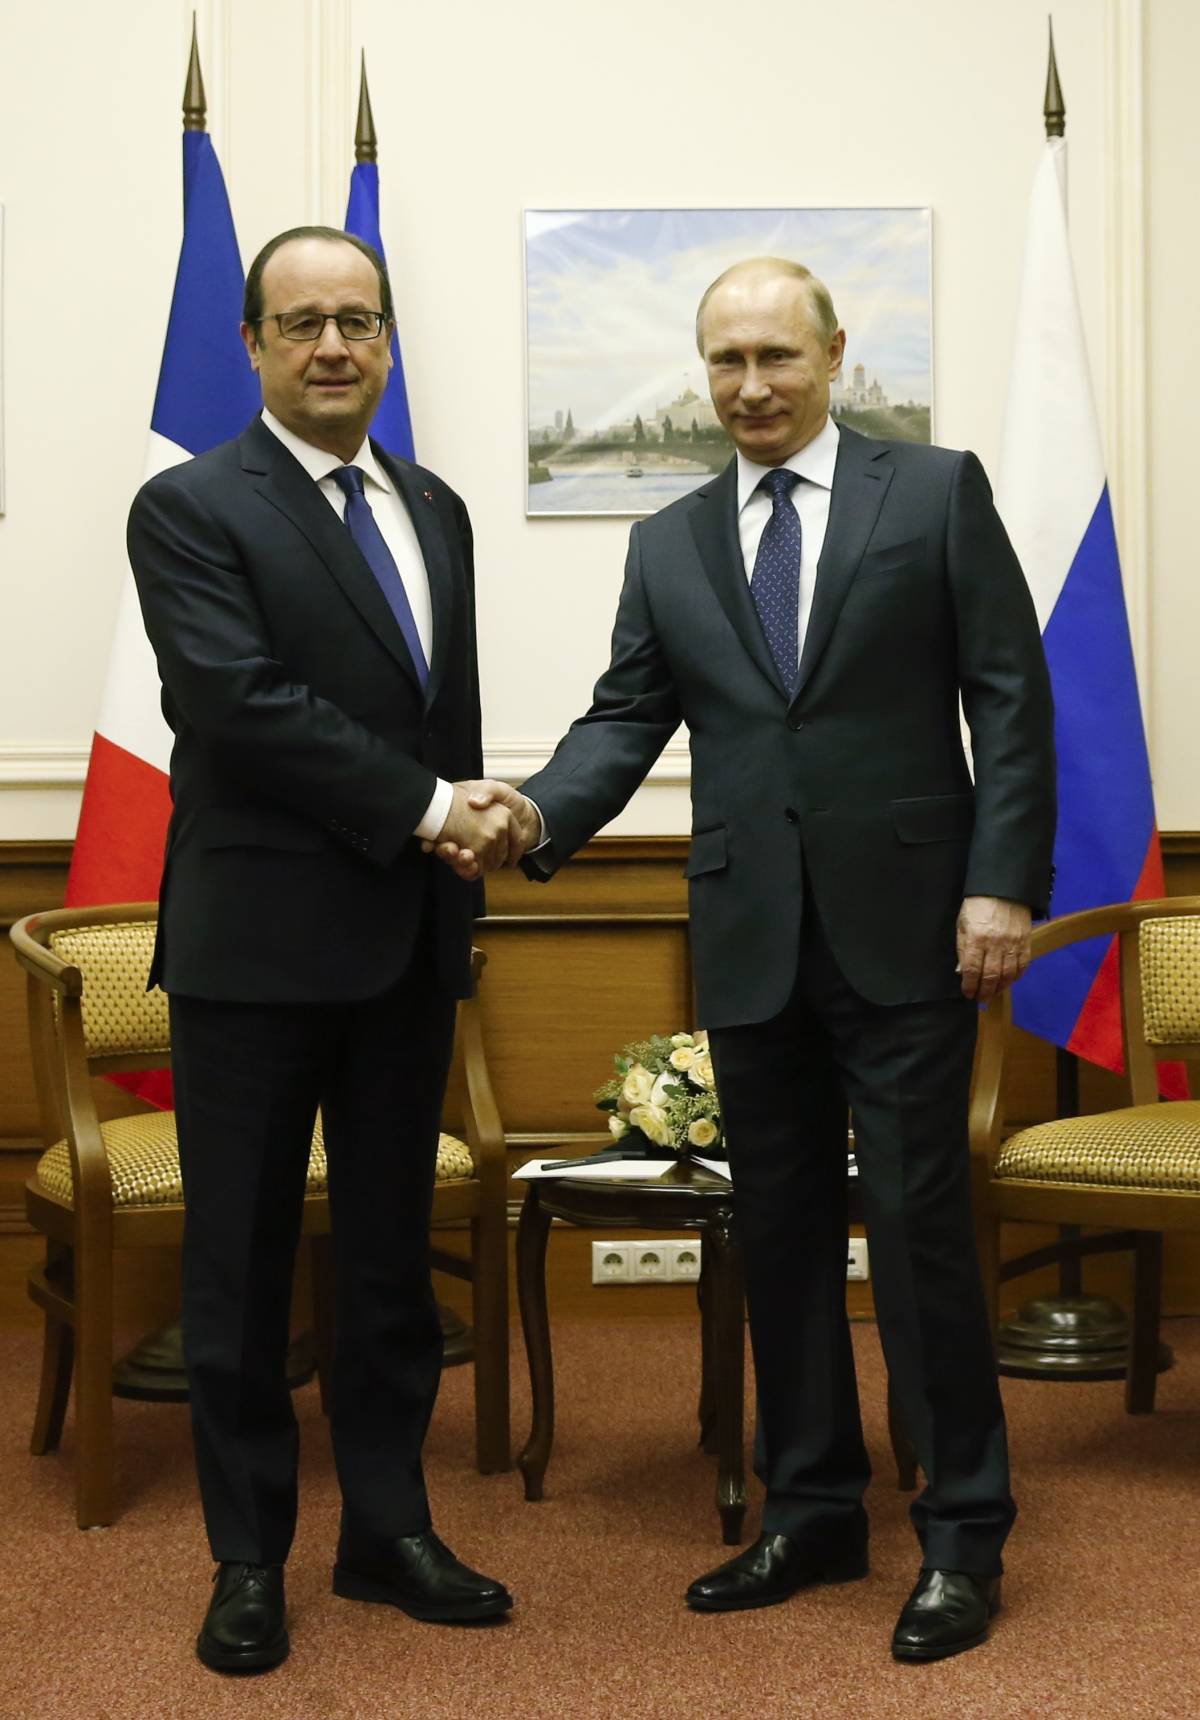 Hollande fa un salto da Putin: per il gas dimentica gli alleati